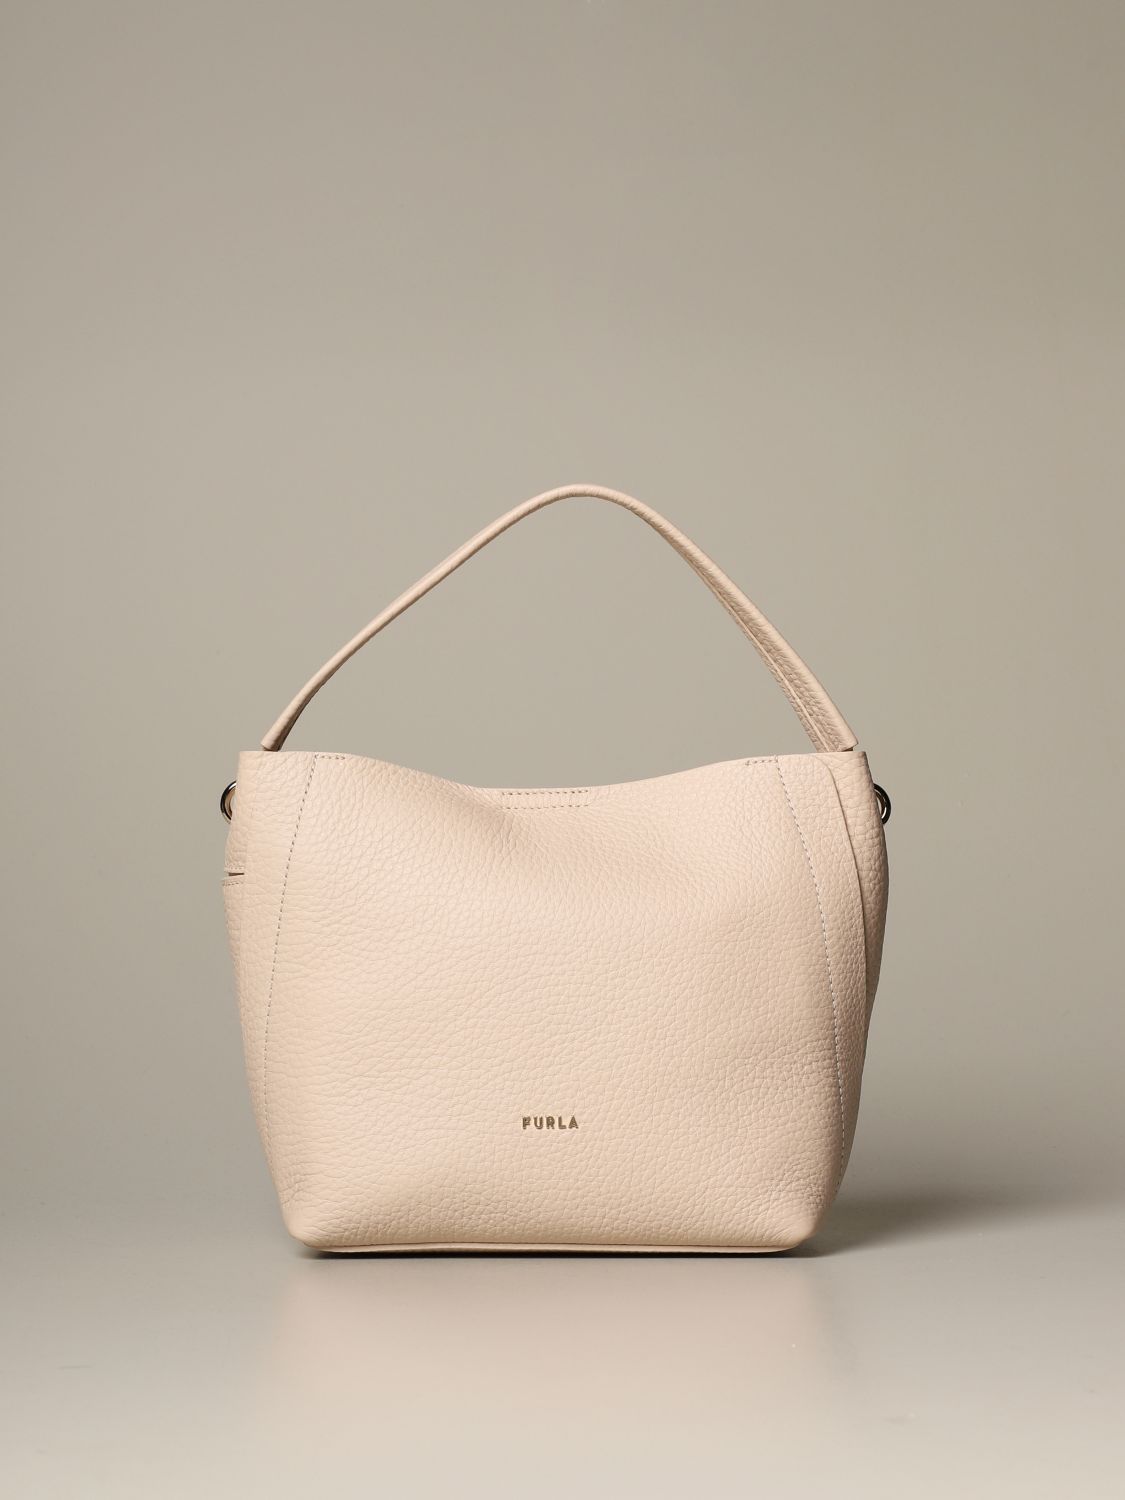 Furla Outlet: Grace hobo bag in grained leather - Pink  Furla shoulder bag  BAUUFGC QUB000 online at